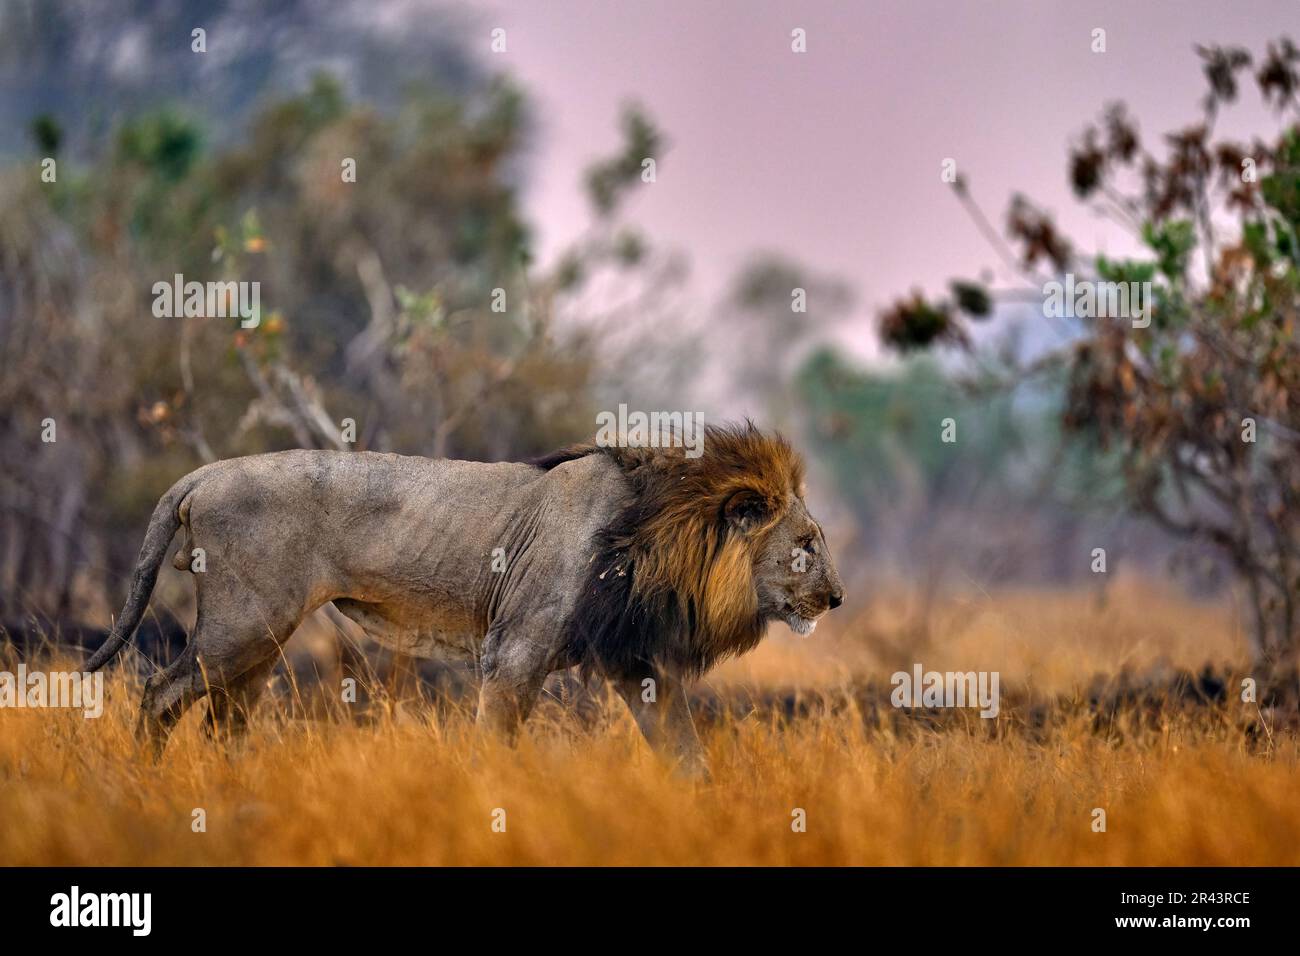 Afrikanischer Löwe, männlich. Botswanische Tierwelt. Löwe, Feuer verbrannt zerstörte Savanne. Tier im Feuer verbrannte Stelle, Löwe in der schwarzen Asche und Asche liegend, Savu Stockfoto